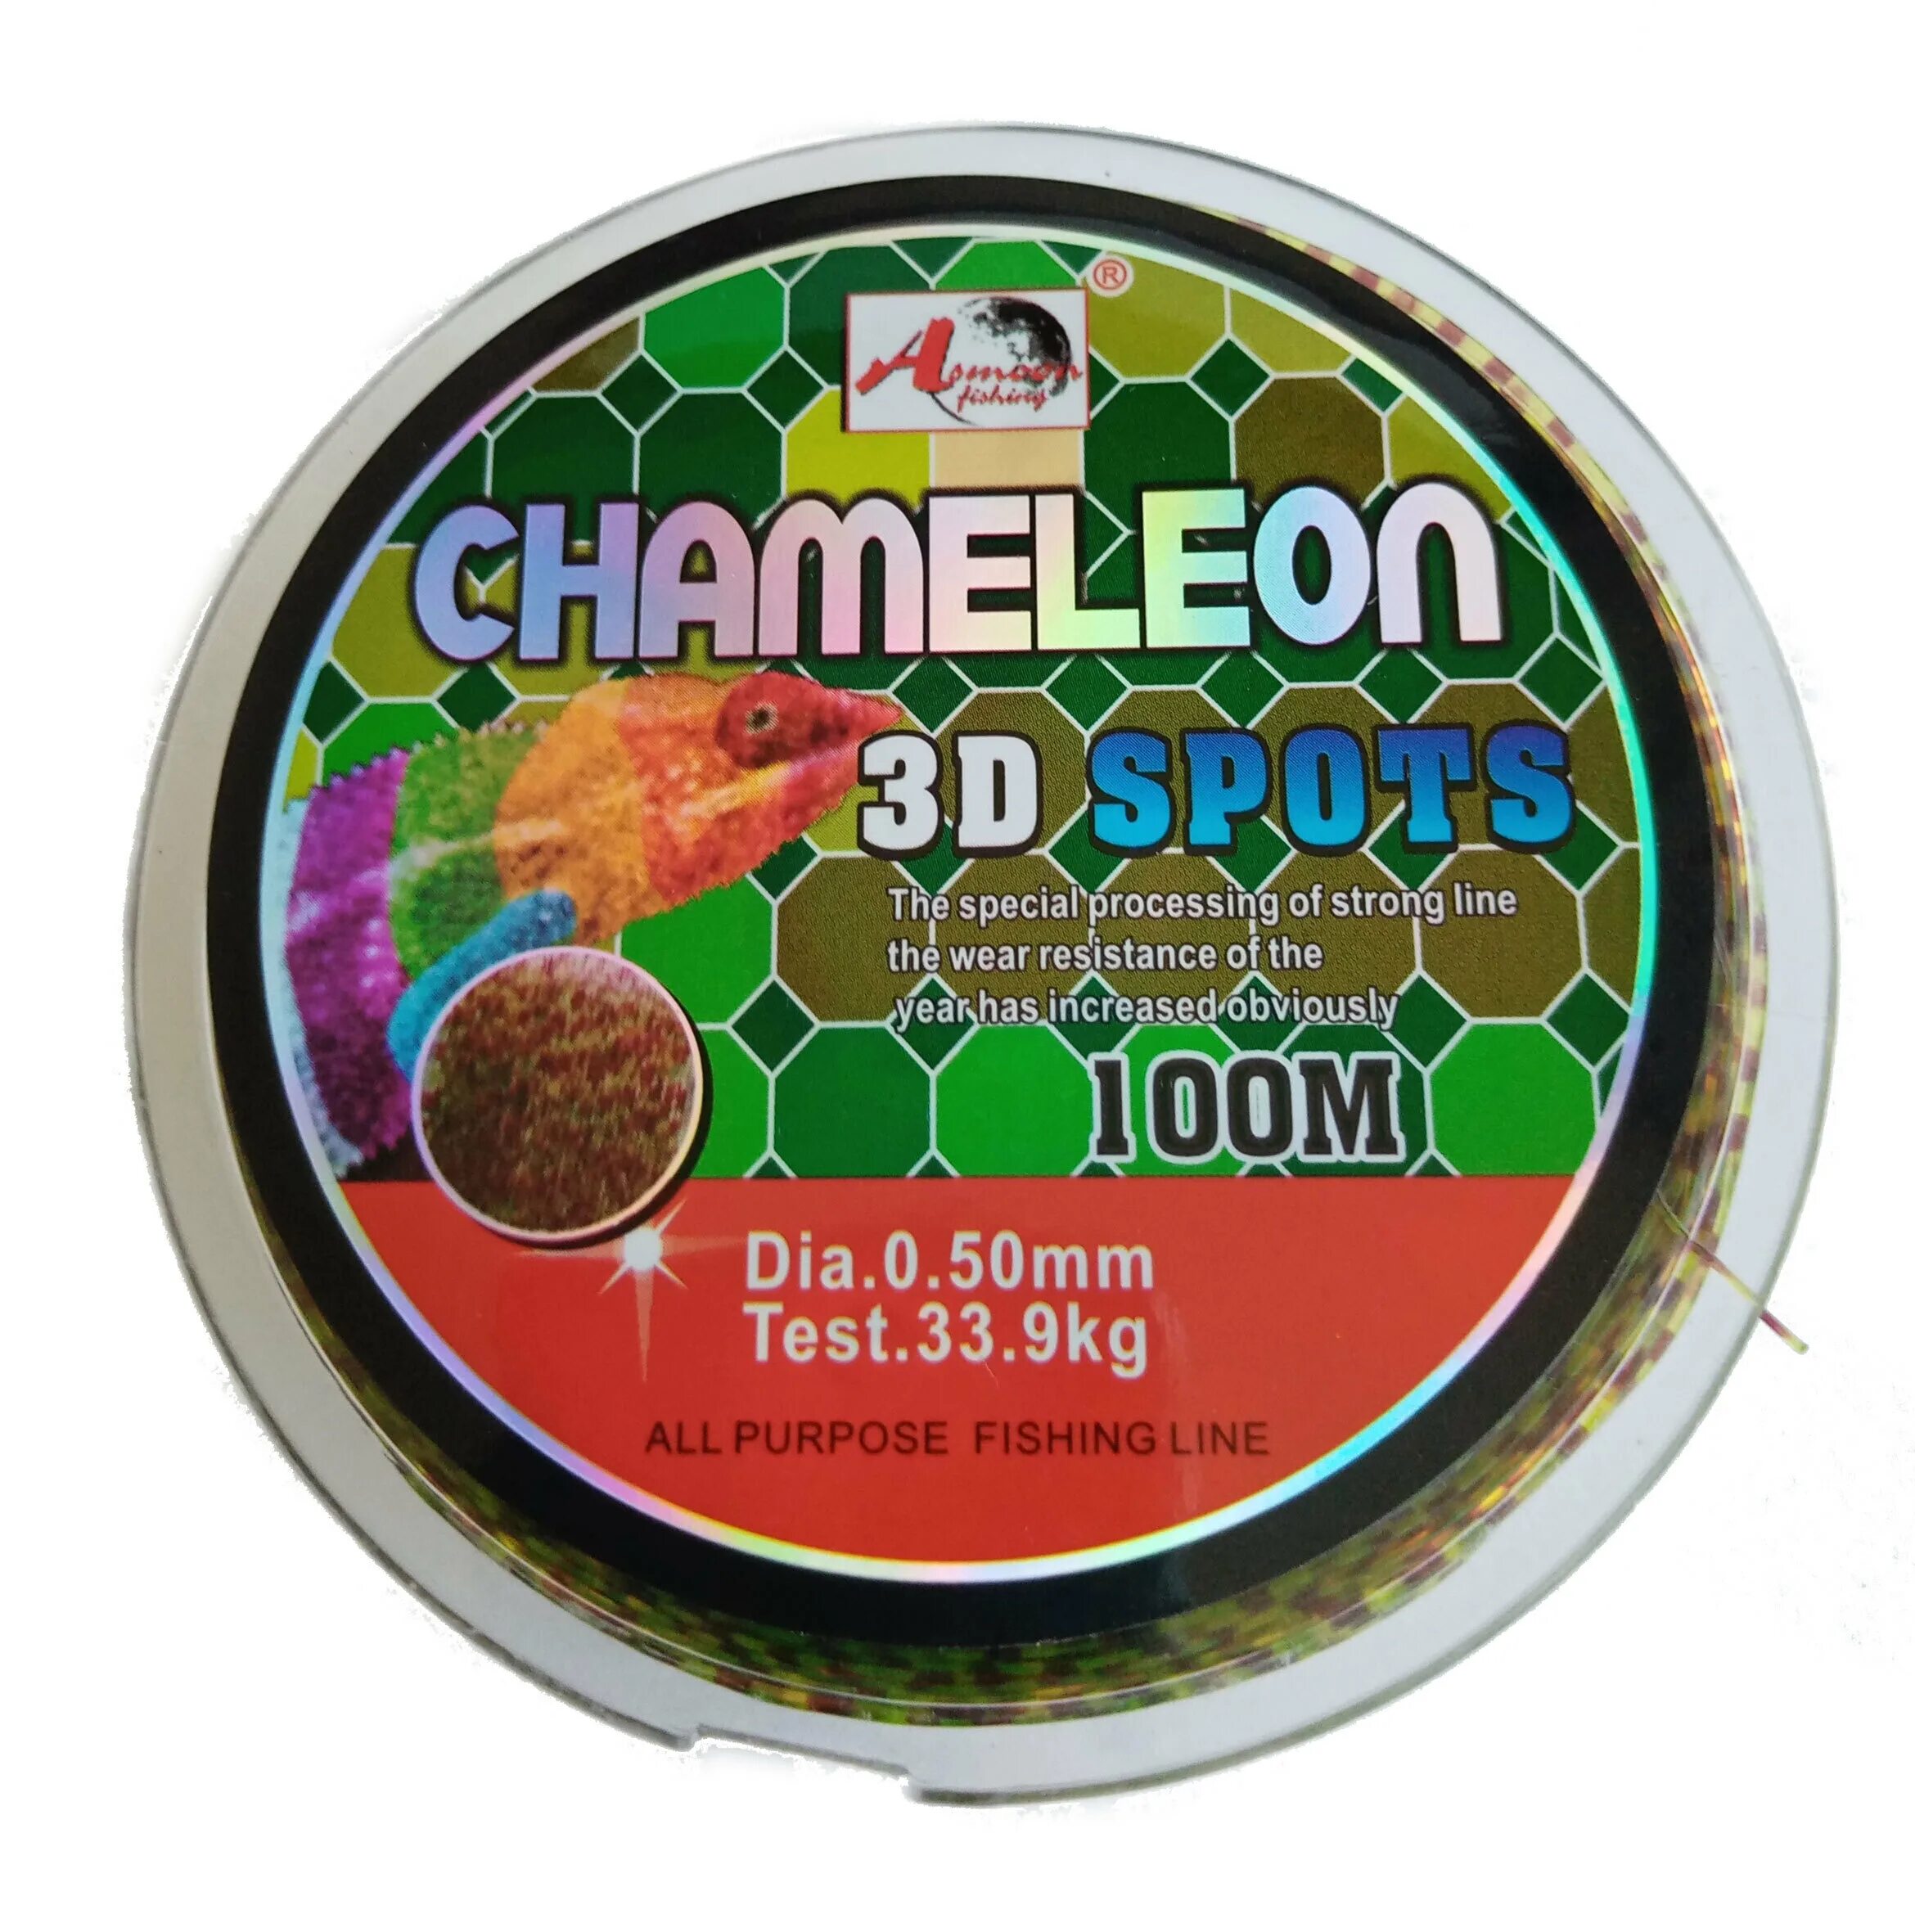 Леска Chameleon 3d spots. Леска рыболовная Chameleon 0,14. Леска хамелеон для рыбалки 018. Леска Chameleon 3d spots отзывы. Хамелеон рыболовная